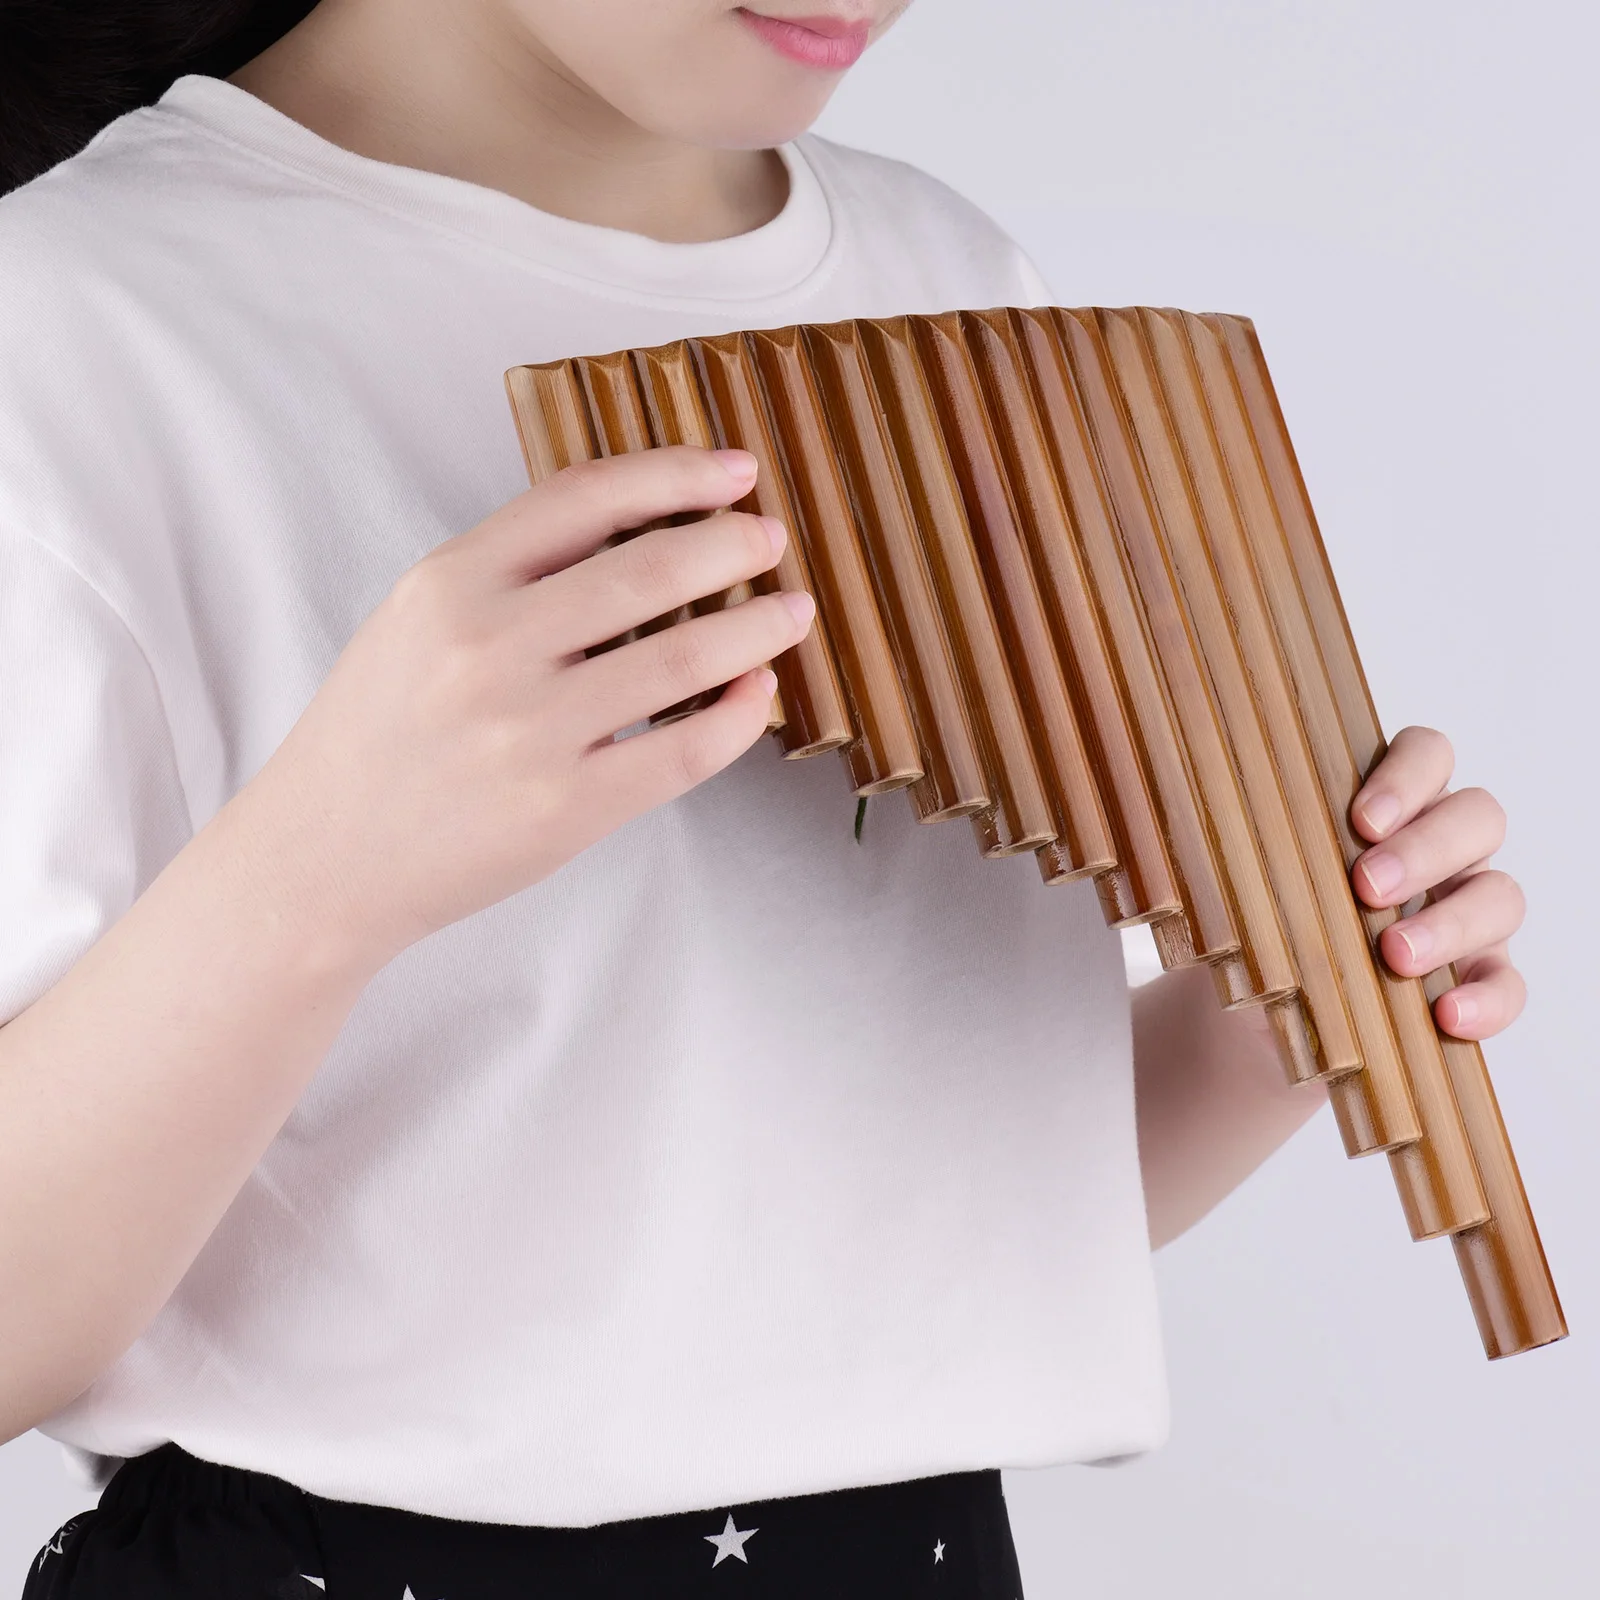 Muslady Visos Fleita 15 Vamzdžiai Natūralaus Bambuko Pučiamųjų instrumentų Panpipe Klavišą G Panpipe Kinijos Tradicinės Woodwind Priemonė su maišeliu